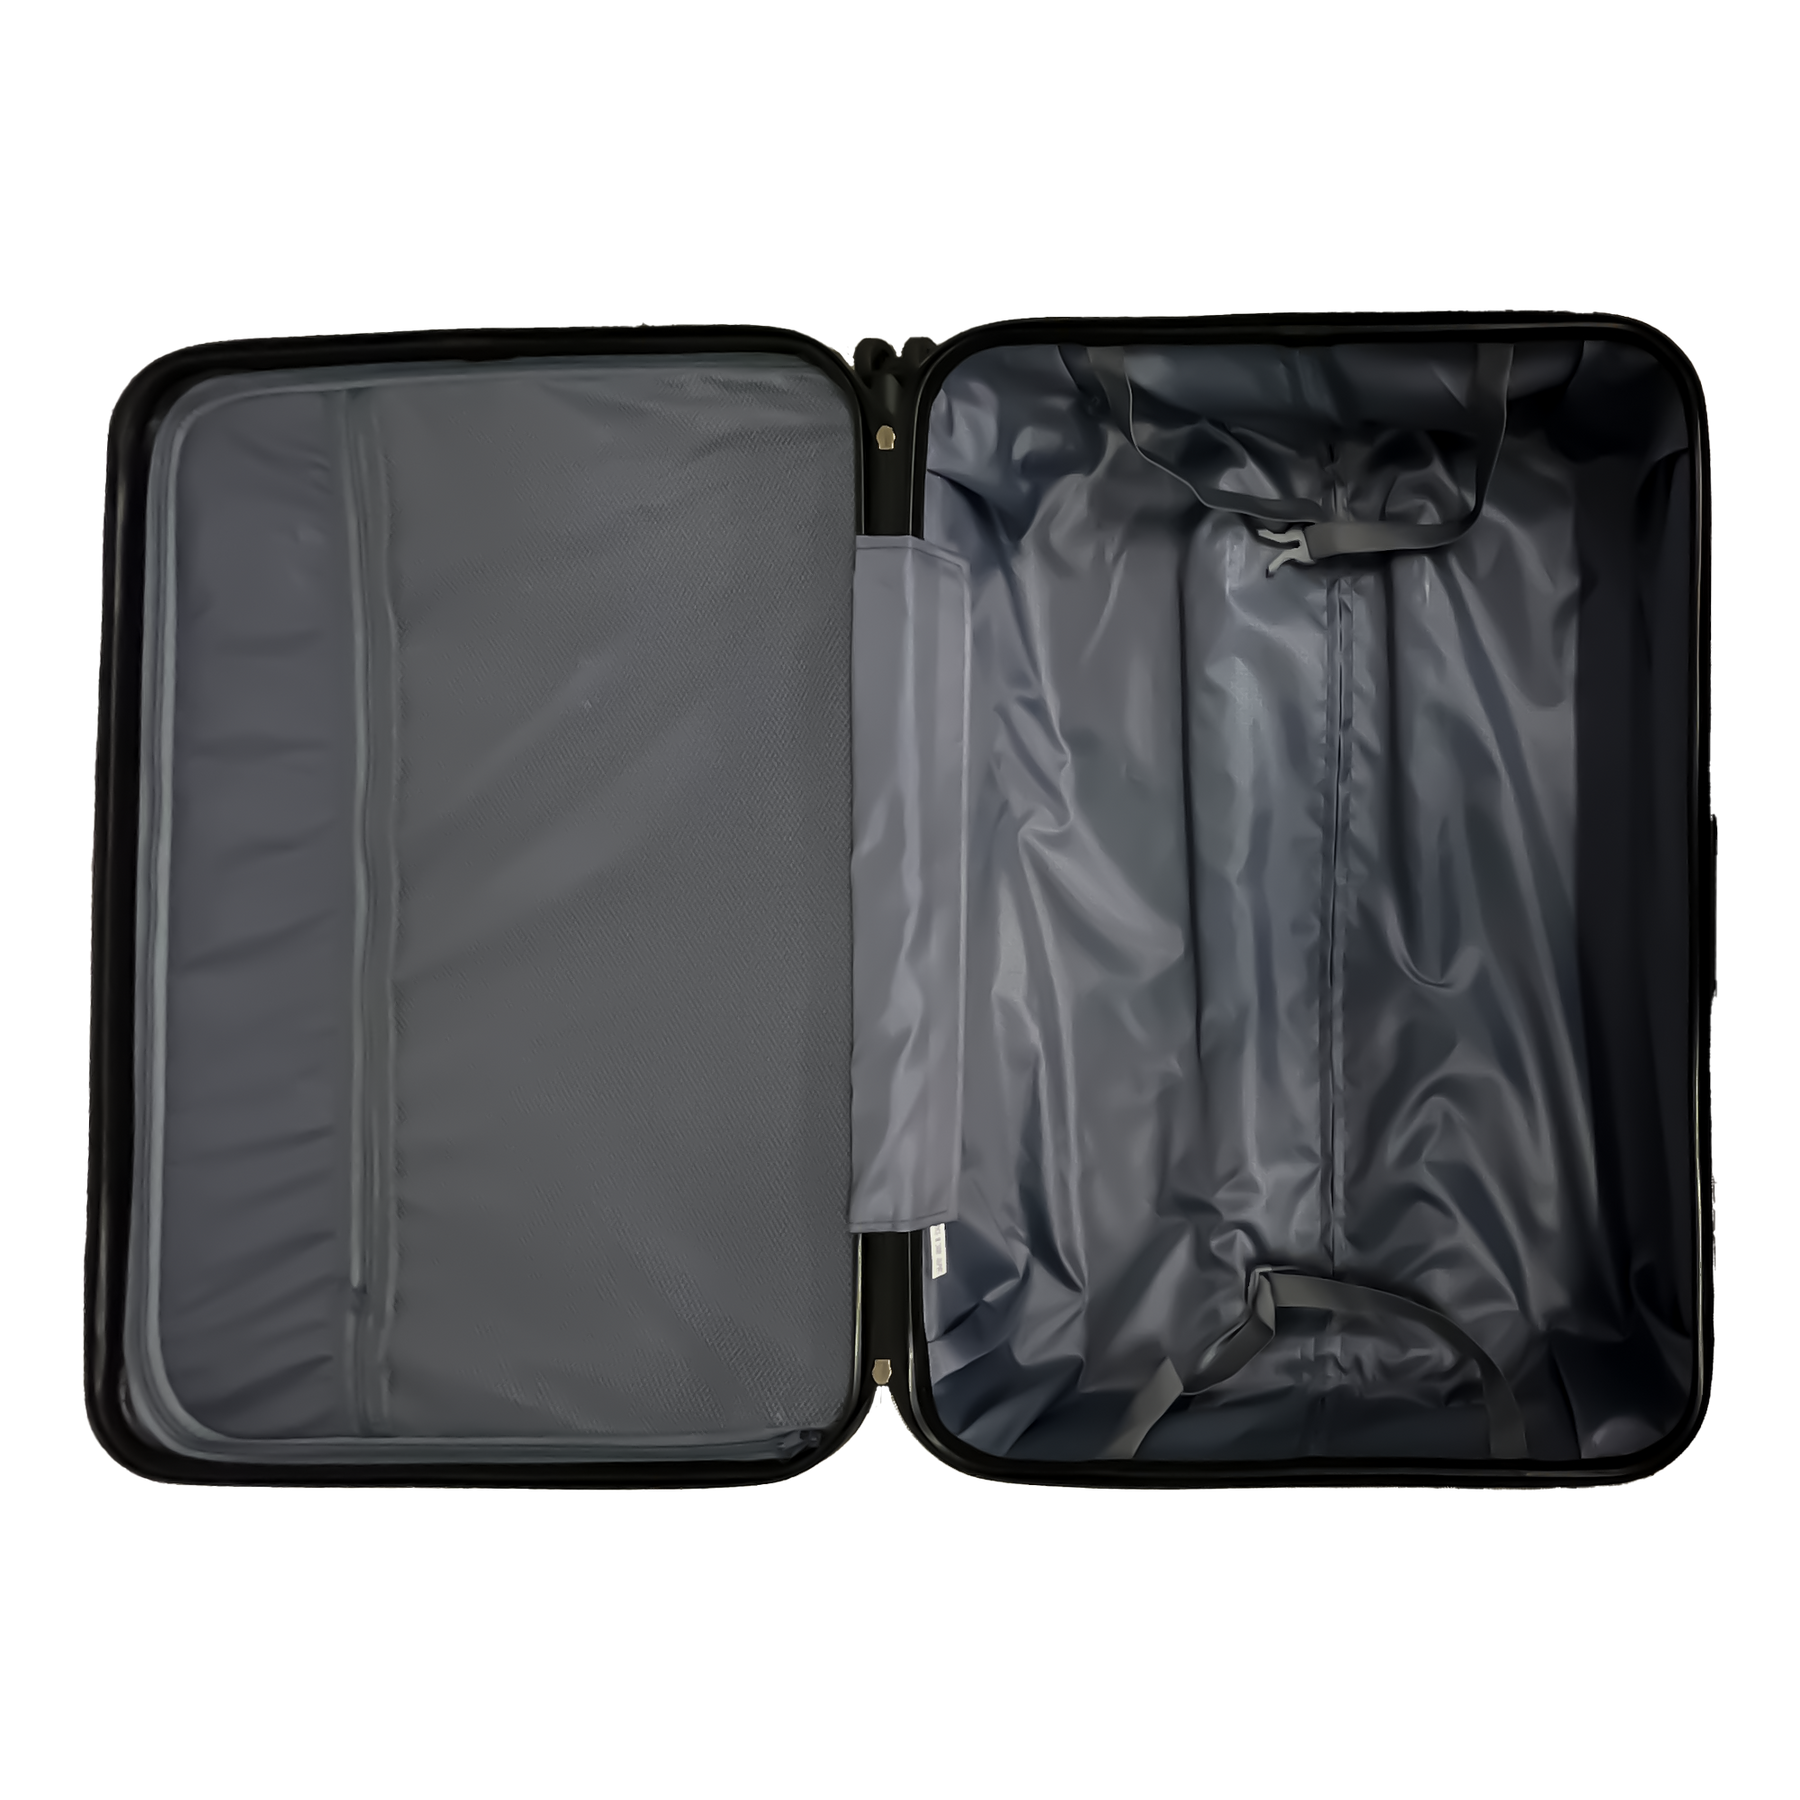 Ormi DuoLine Grande Mala de Viagem Rígida com Carrinho de 75x50x30 cm, Ultraleve em ABS com 4 Rodas Giratórias 360°